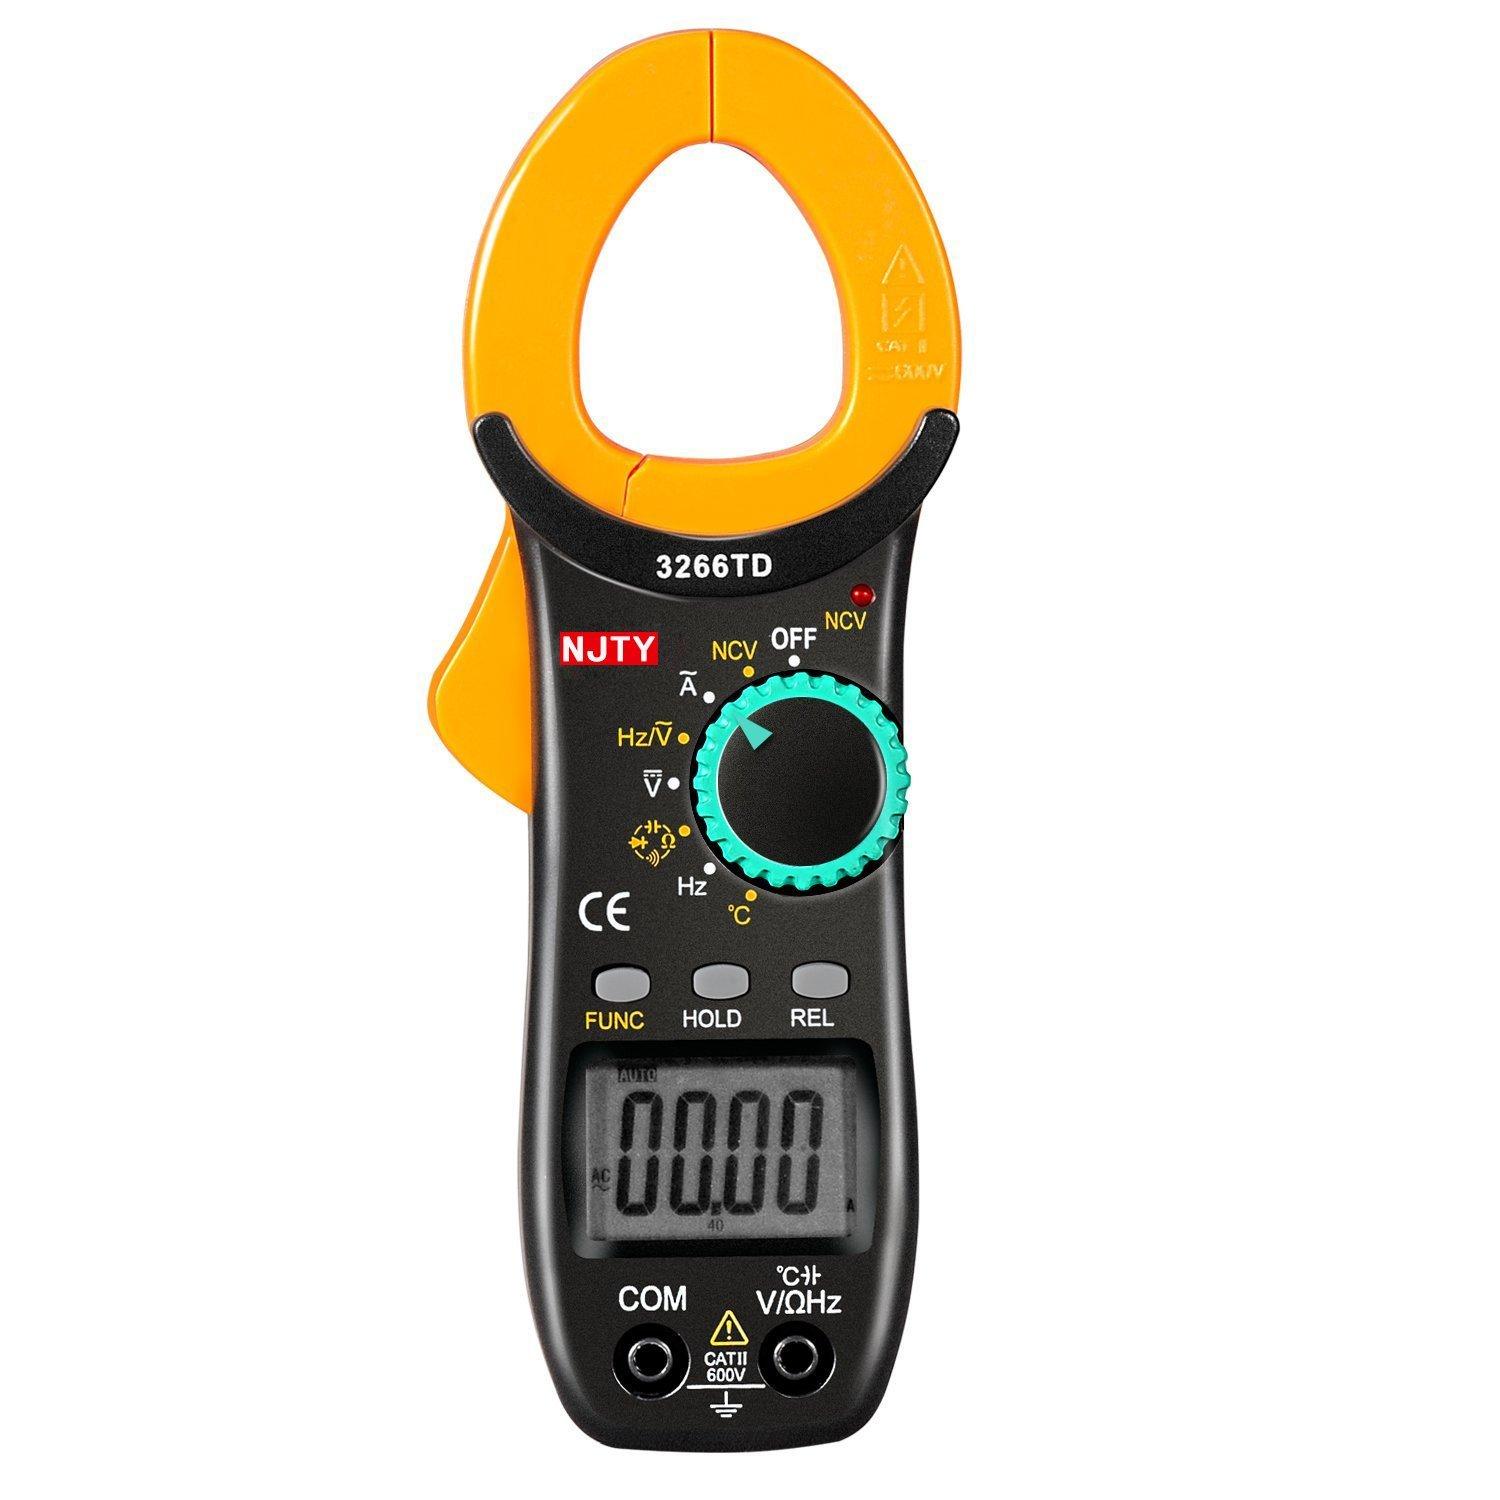 Ampe kìm kẹp mét NJTY 3266TD bỏ túi, công cụ sửa chữa điện , điện lạnh đo được nhiệt độ.